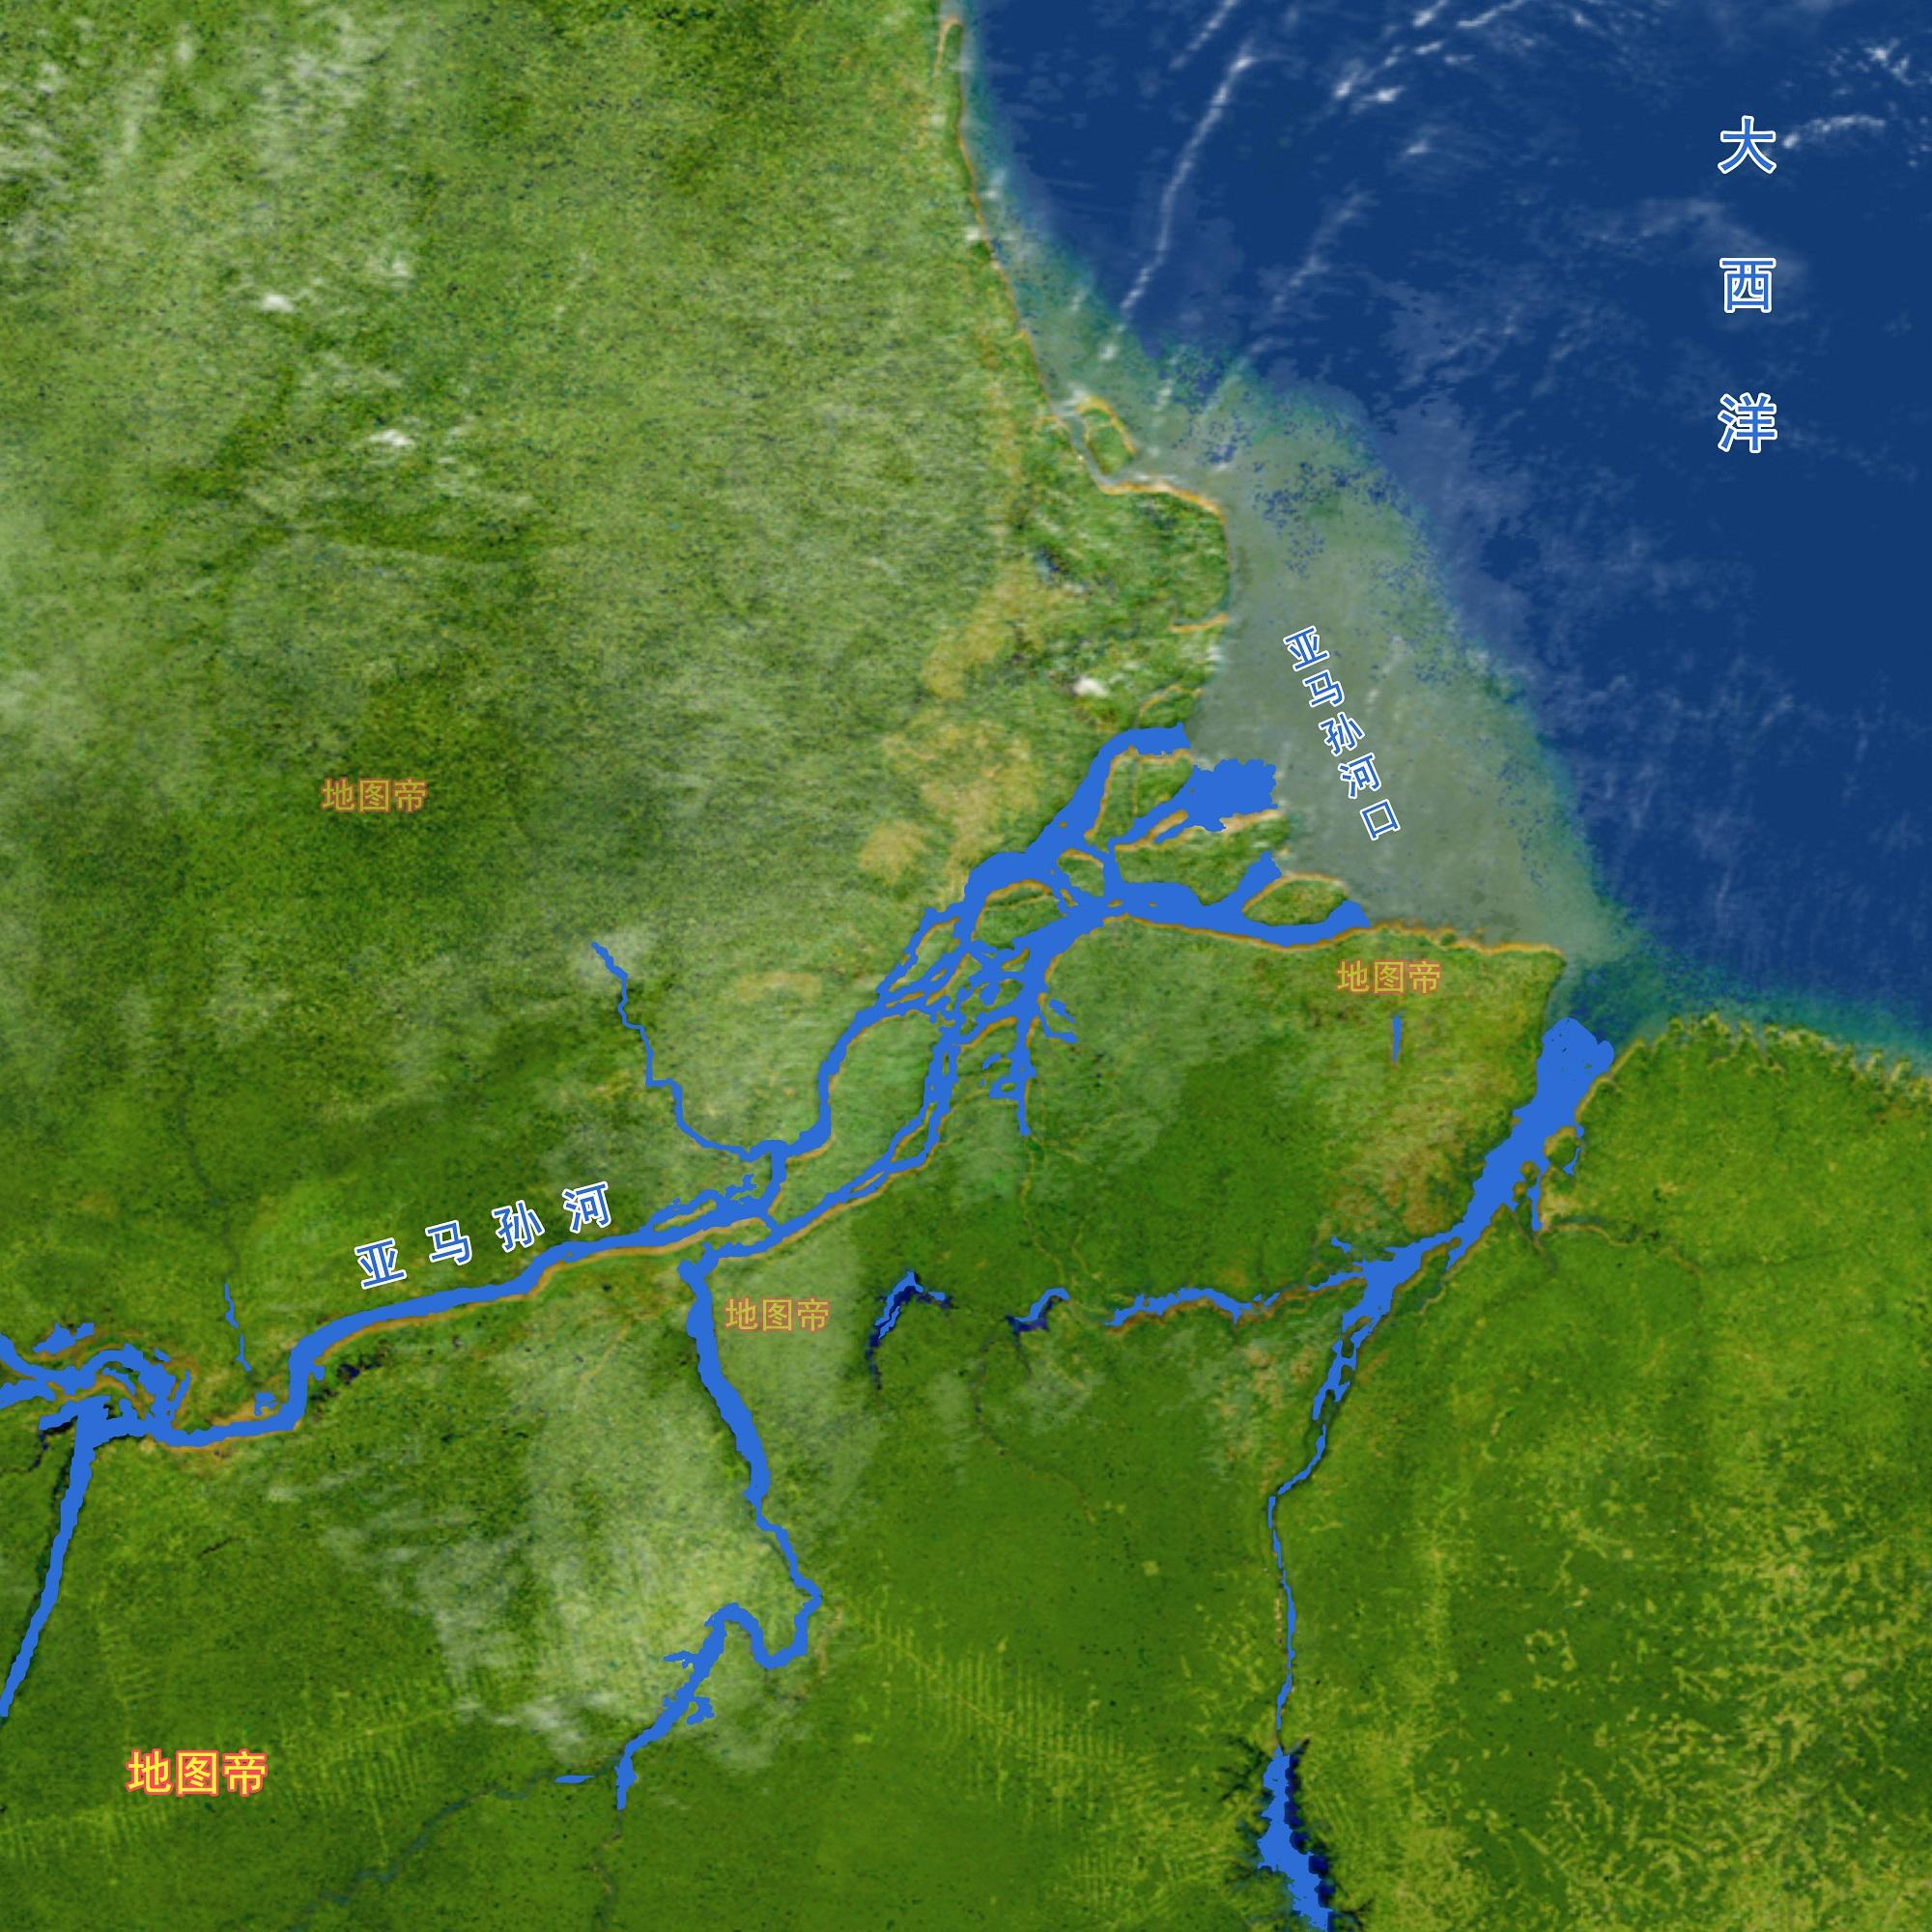 巴西800多万平方公里,为何亚马孙河沿岸人口不多?